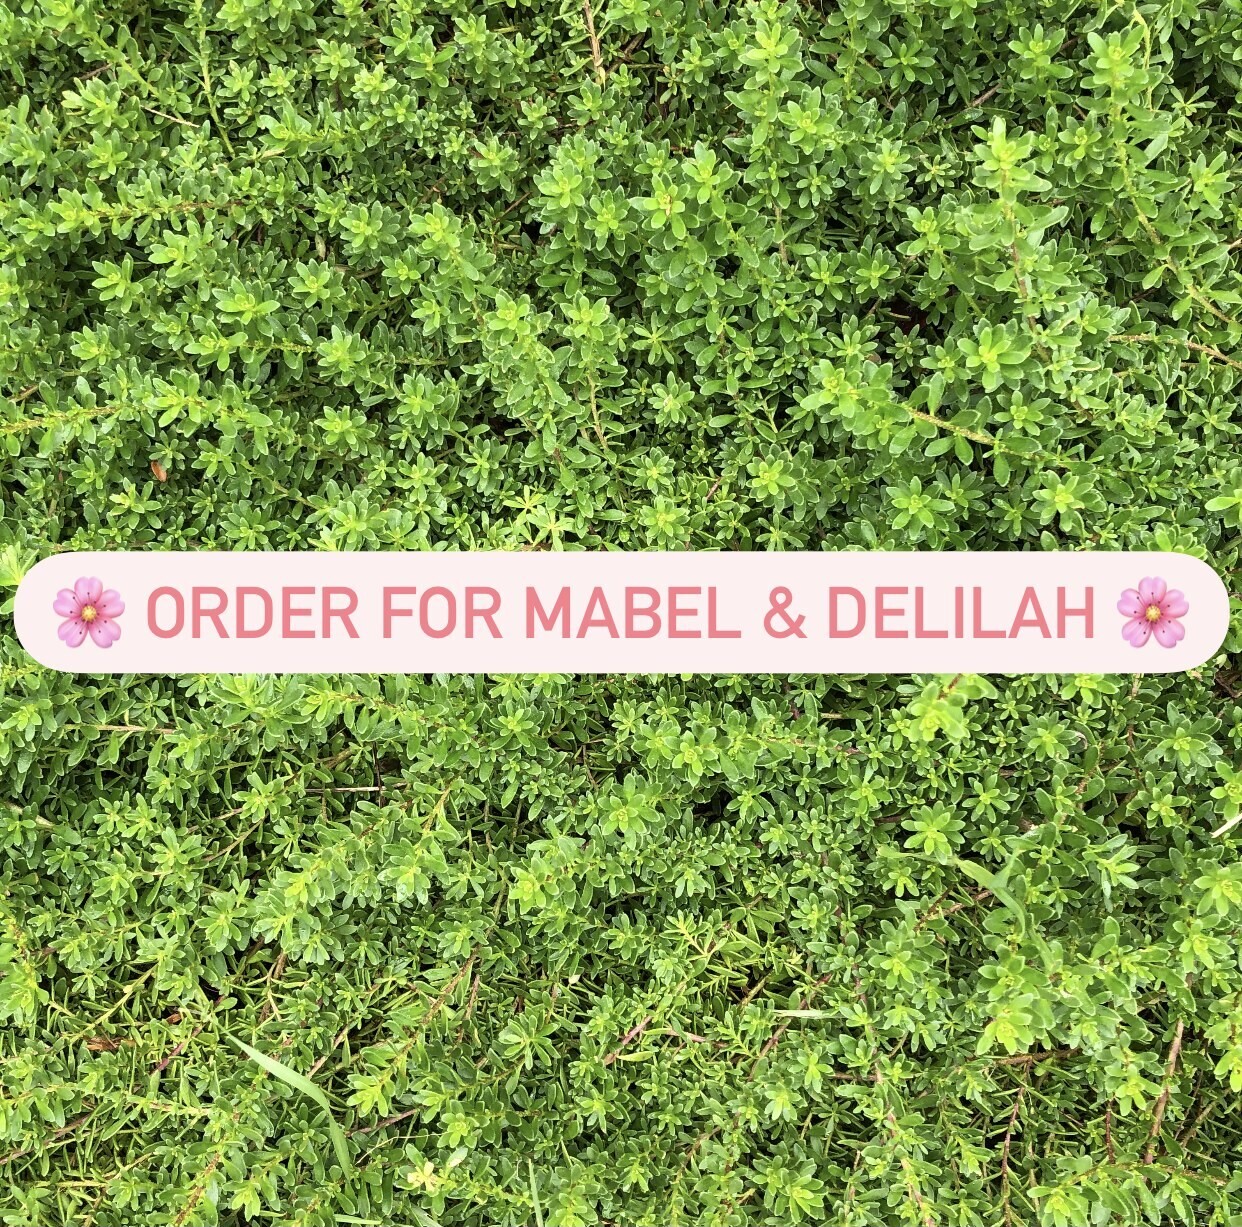 Order for a Mabel & Delilah